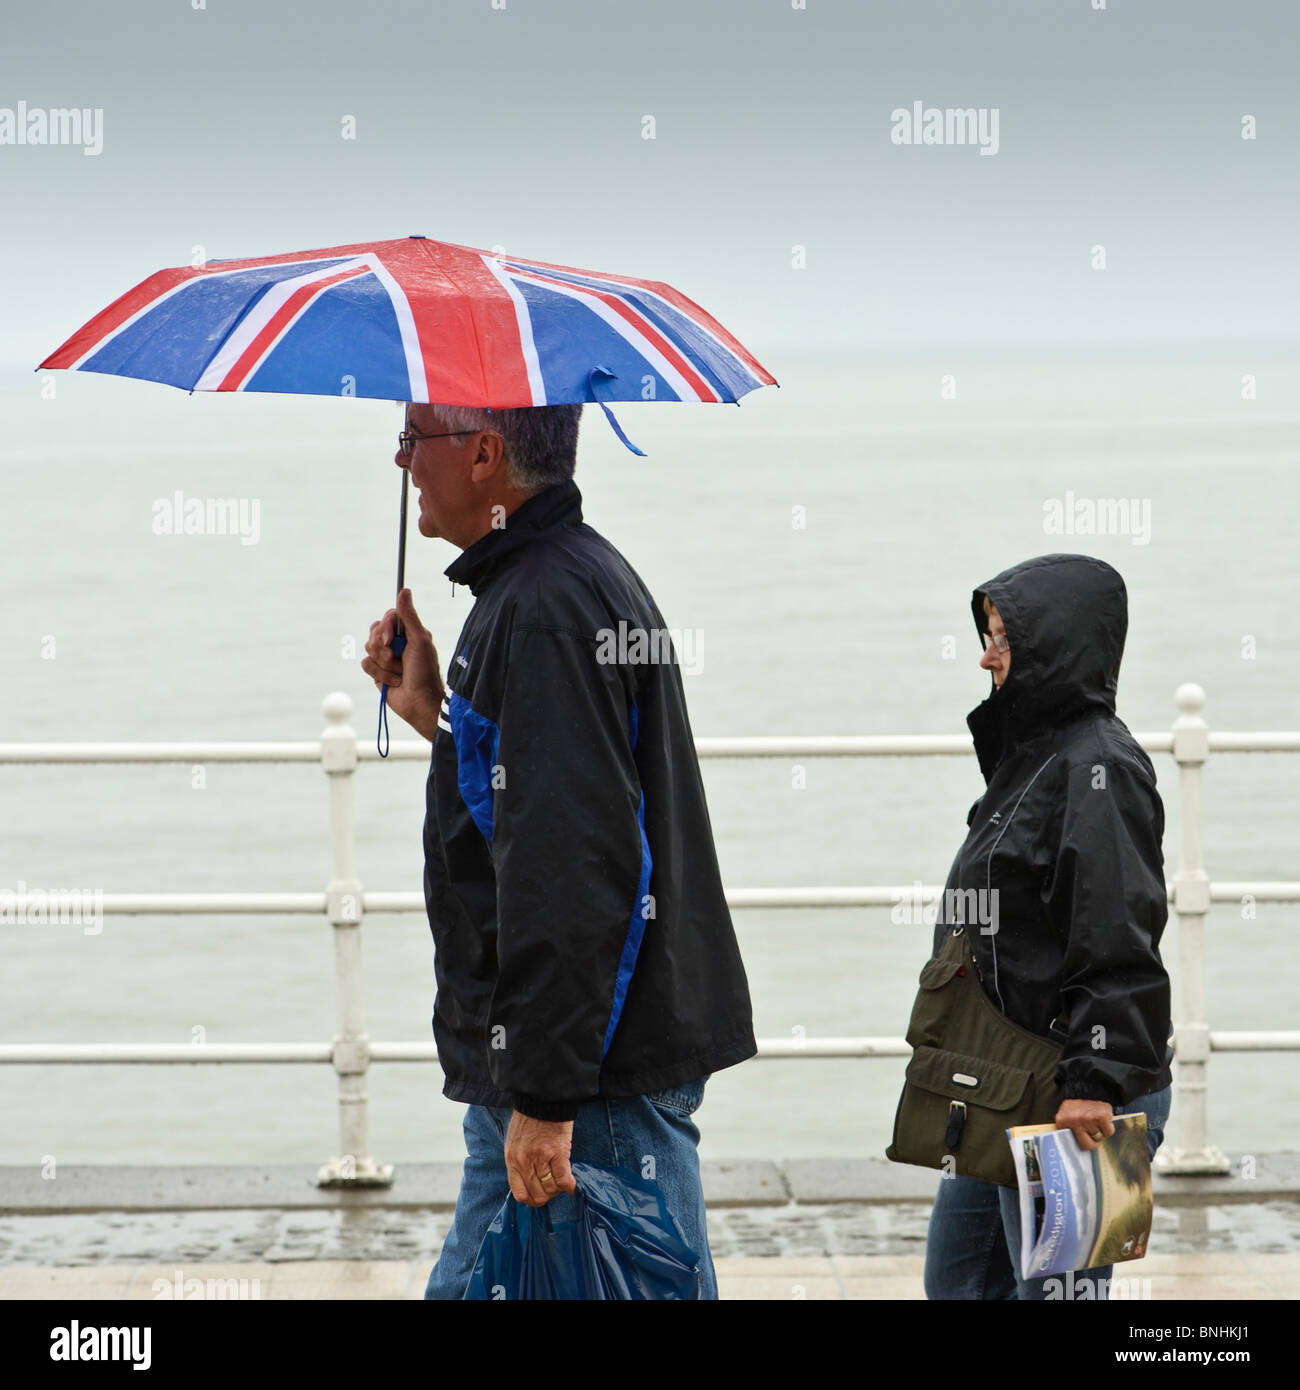 Menschen zu Fuß entlang Aberystwyth promenade im Regen eine Juli nass Sommernachmittag, Wales UK Union Jack Dach festhalten Stockfoto